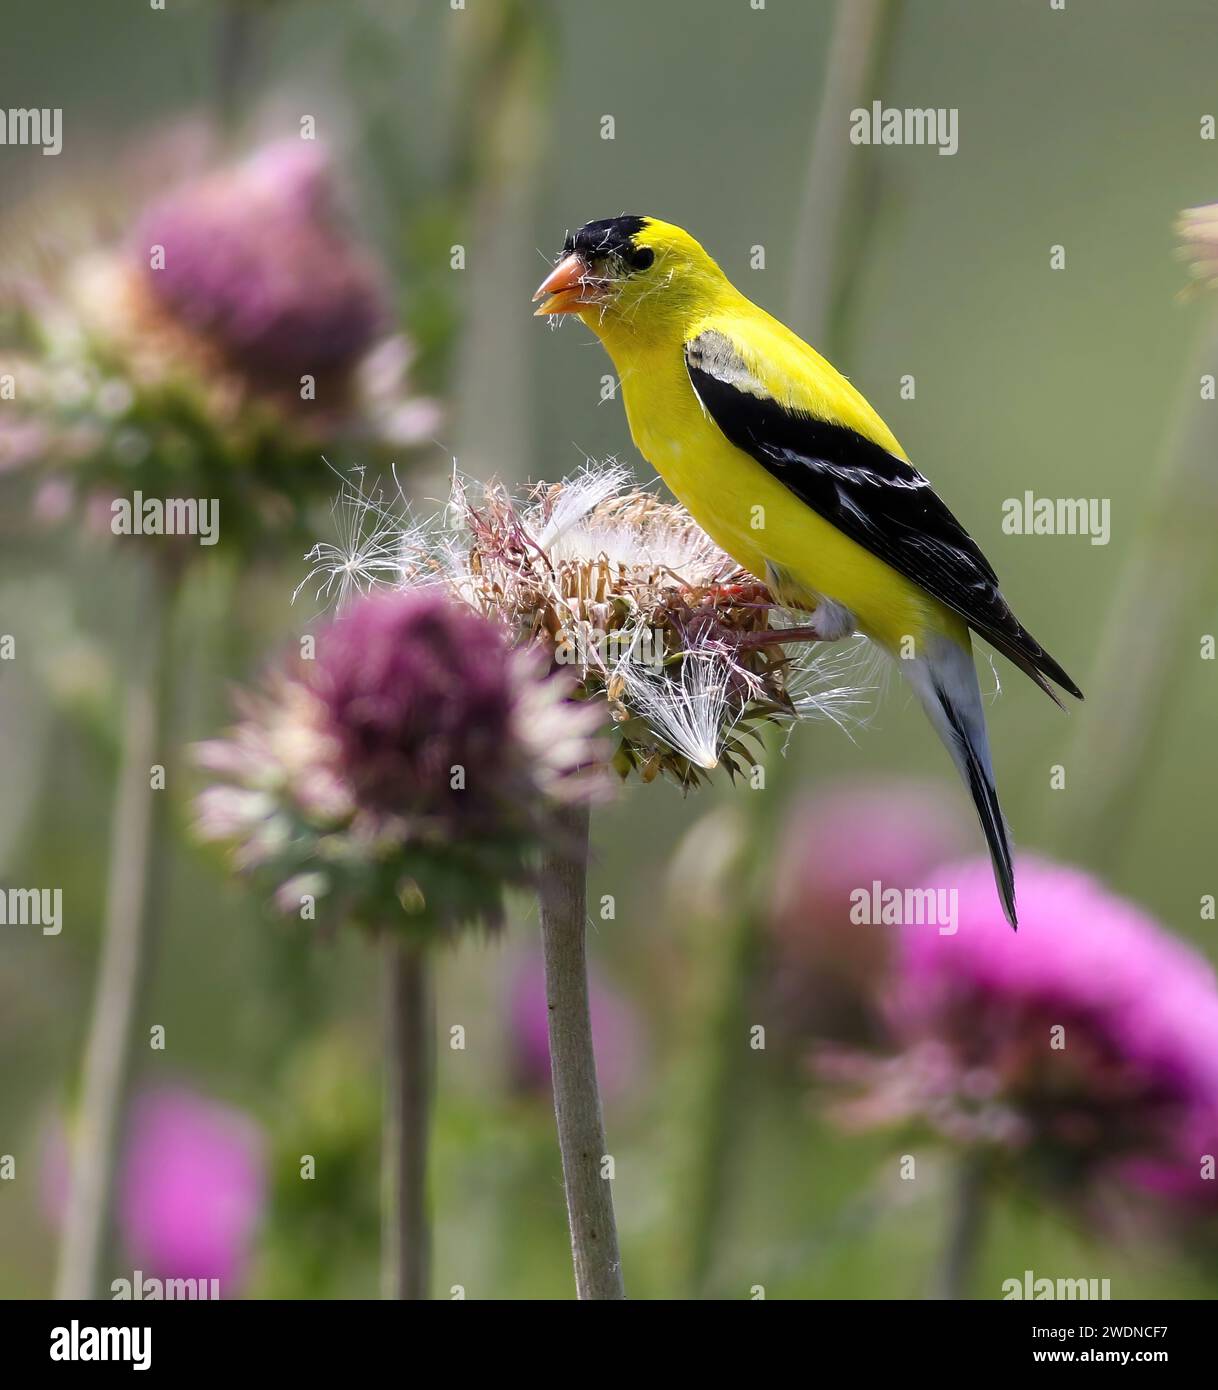 Ein Goldfinch, der in einem Feld wilder Distelblüten auf der Suche ist, schaut mit einem Kopf, der mit Distelsamen bedeckt ist, nach oben. Stockfoto